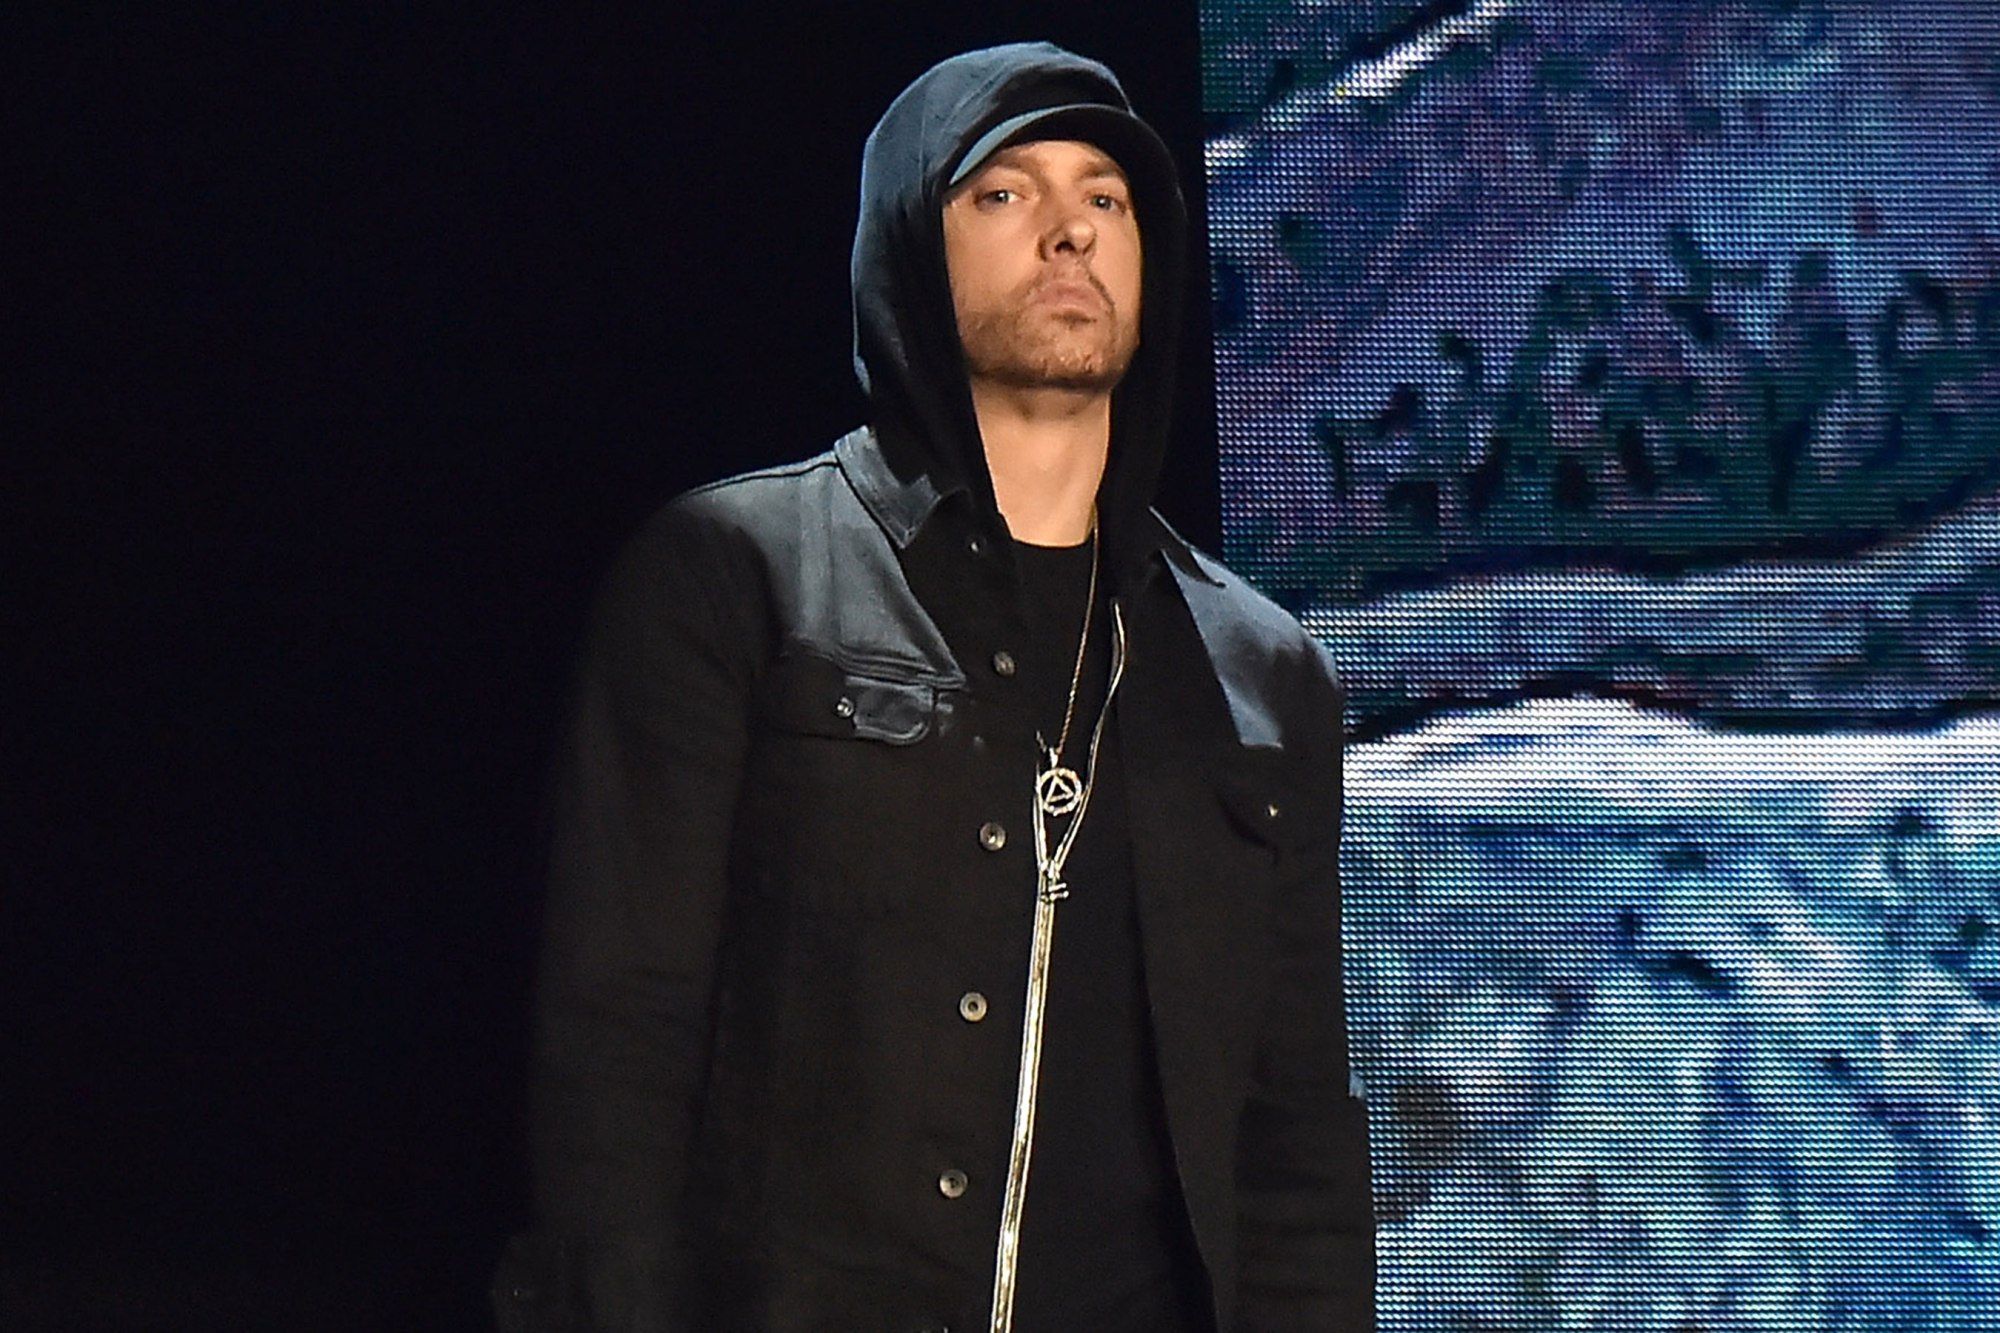 ASCULTĂ | Eminem a lansat două piese noi. Ascultă aici „Fall” și „Lucky You”!